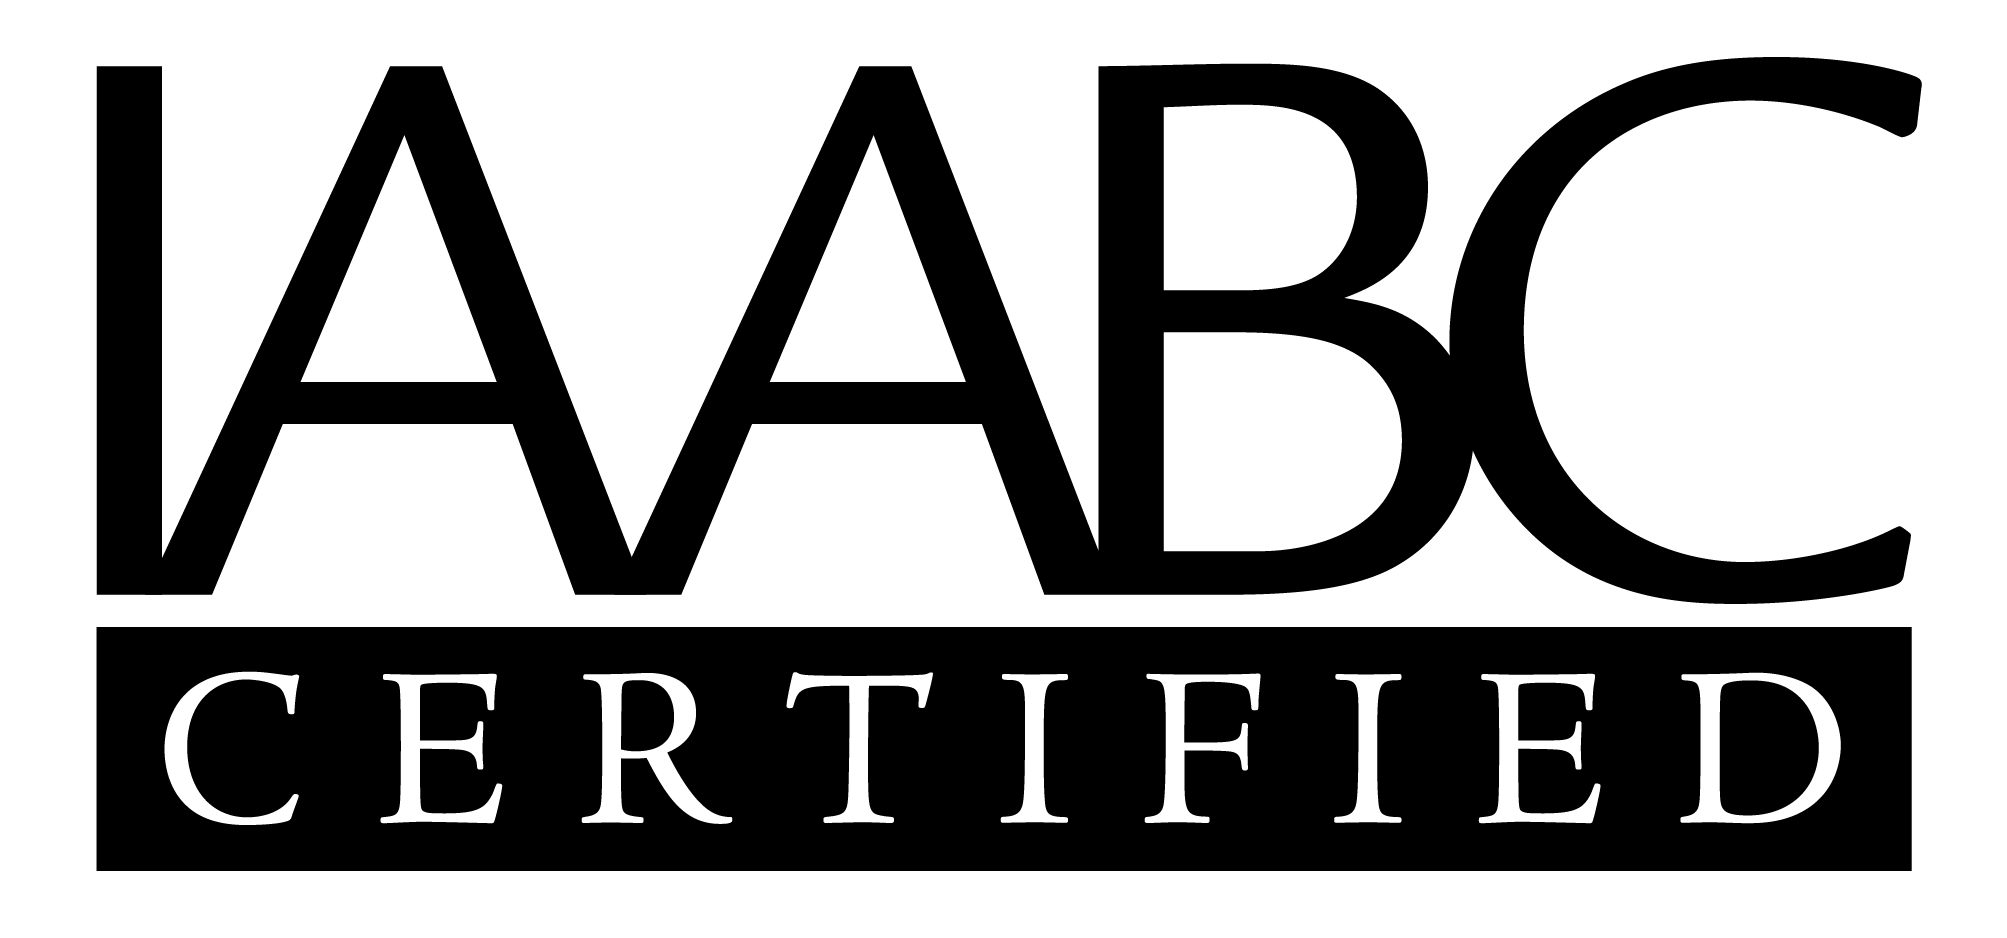 HAB-iaabc-certified-black.png